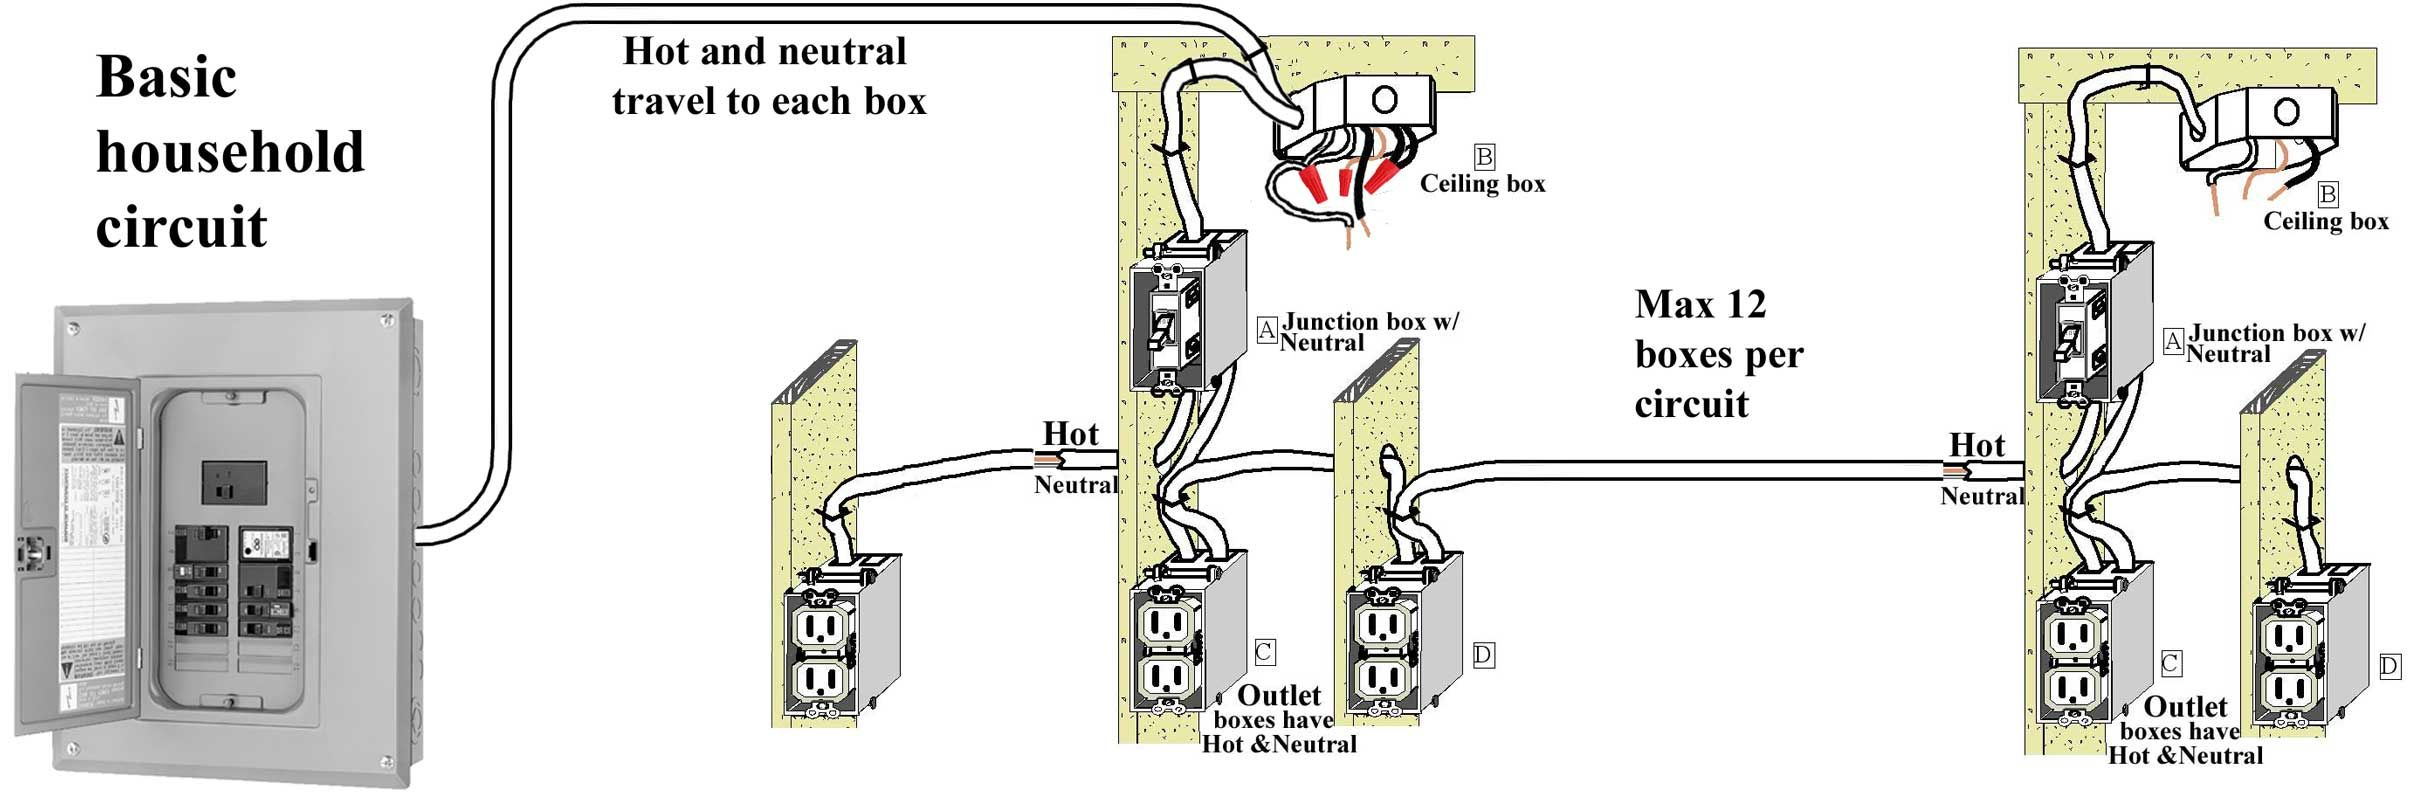 Basic House Wiring - Wiring Diagram Data - House Wiring Diagram